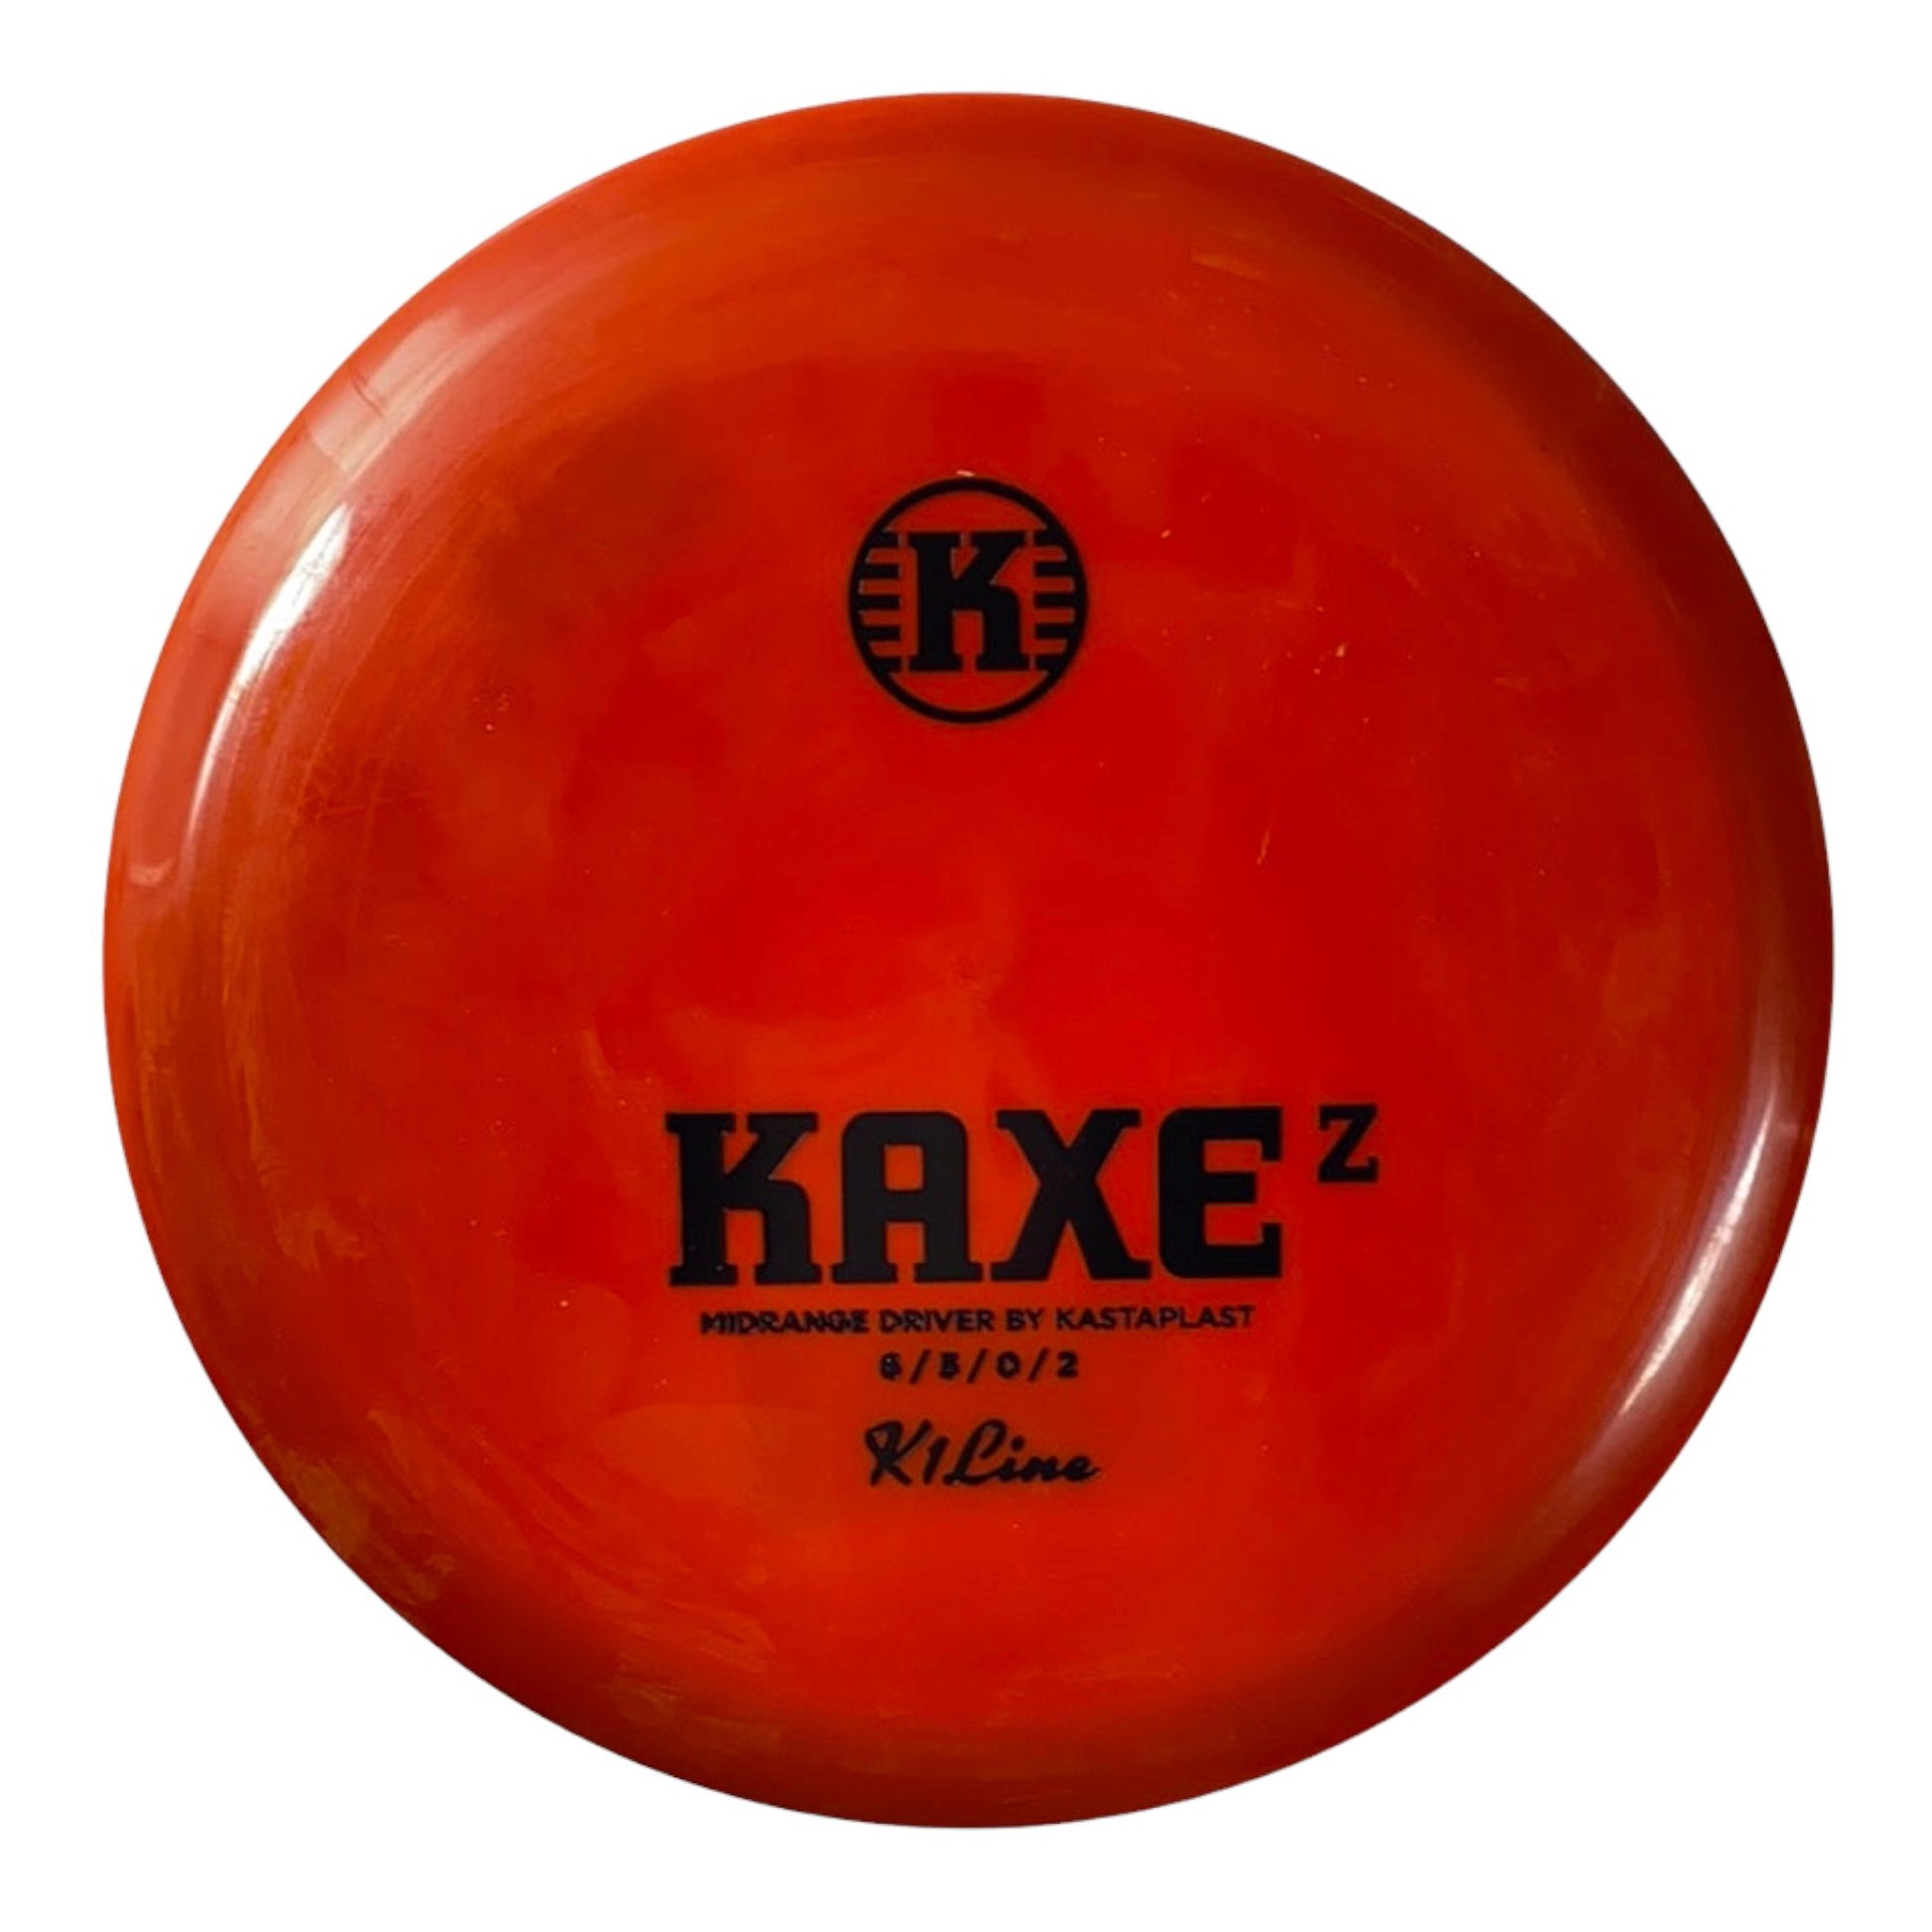 Kastaplast Kaxe Z | K1 | Red/Black 170-172g Disc Golf